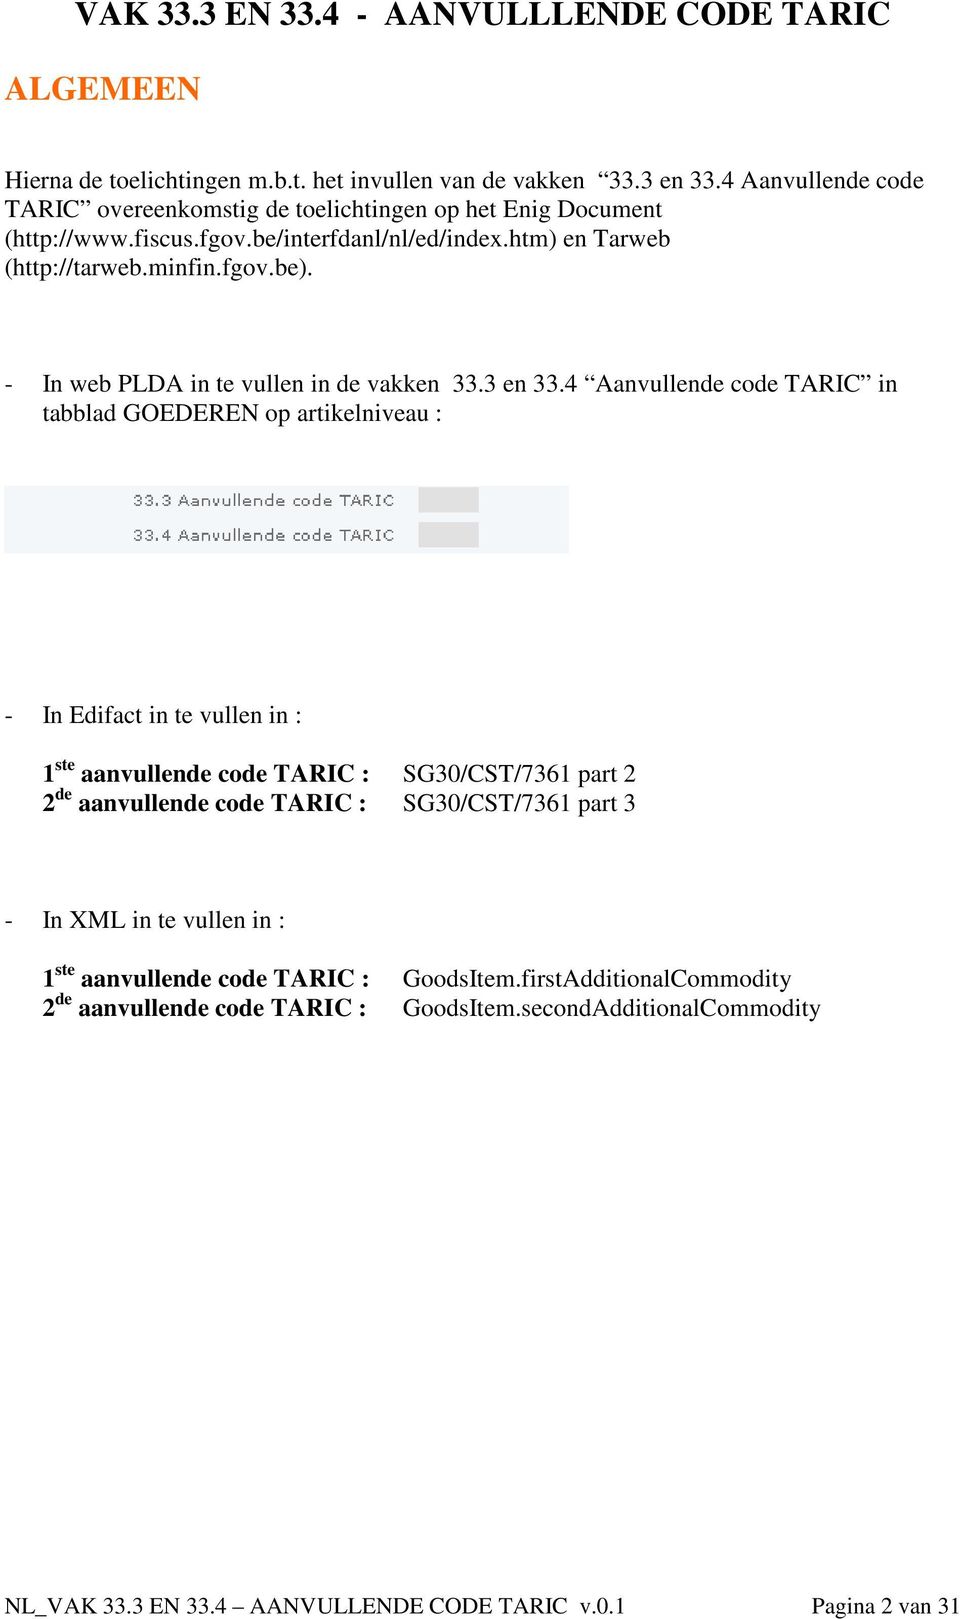 4 Aanvullende code TARIC in tabblad GOEDEREN op artikelniveau : - In Edifact in te vullen in : 1 ste aanvullende code TARIC : SG30/CST/7361 part 2 2 de aanvullende code TARIC :